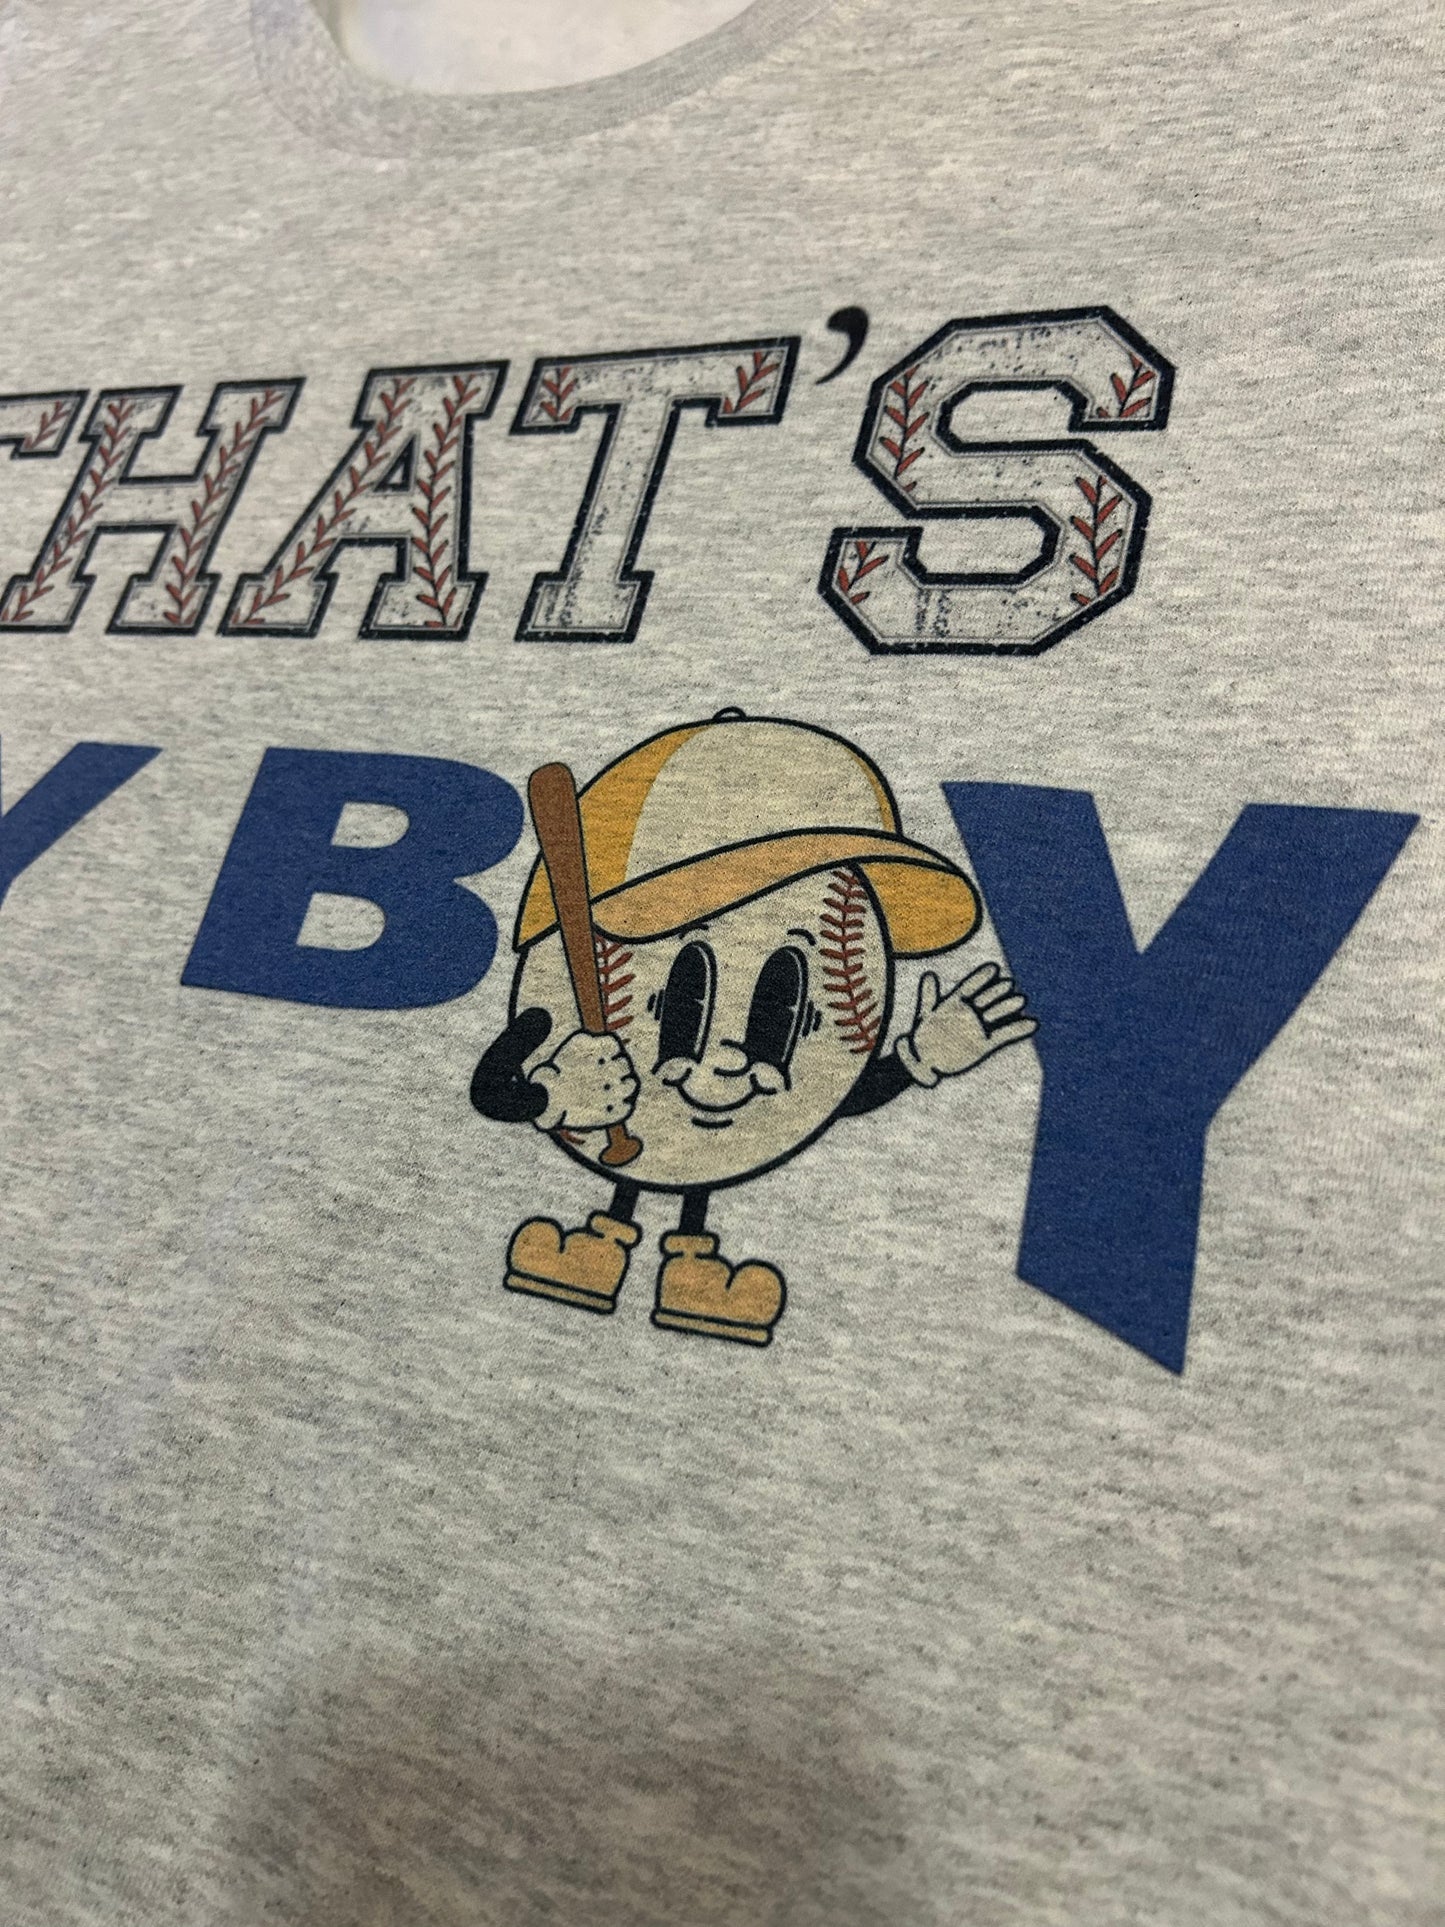 CUSTOMIZABLE “Thats My Boy”-Baseball Crewneck Sweatshirt or Tee